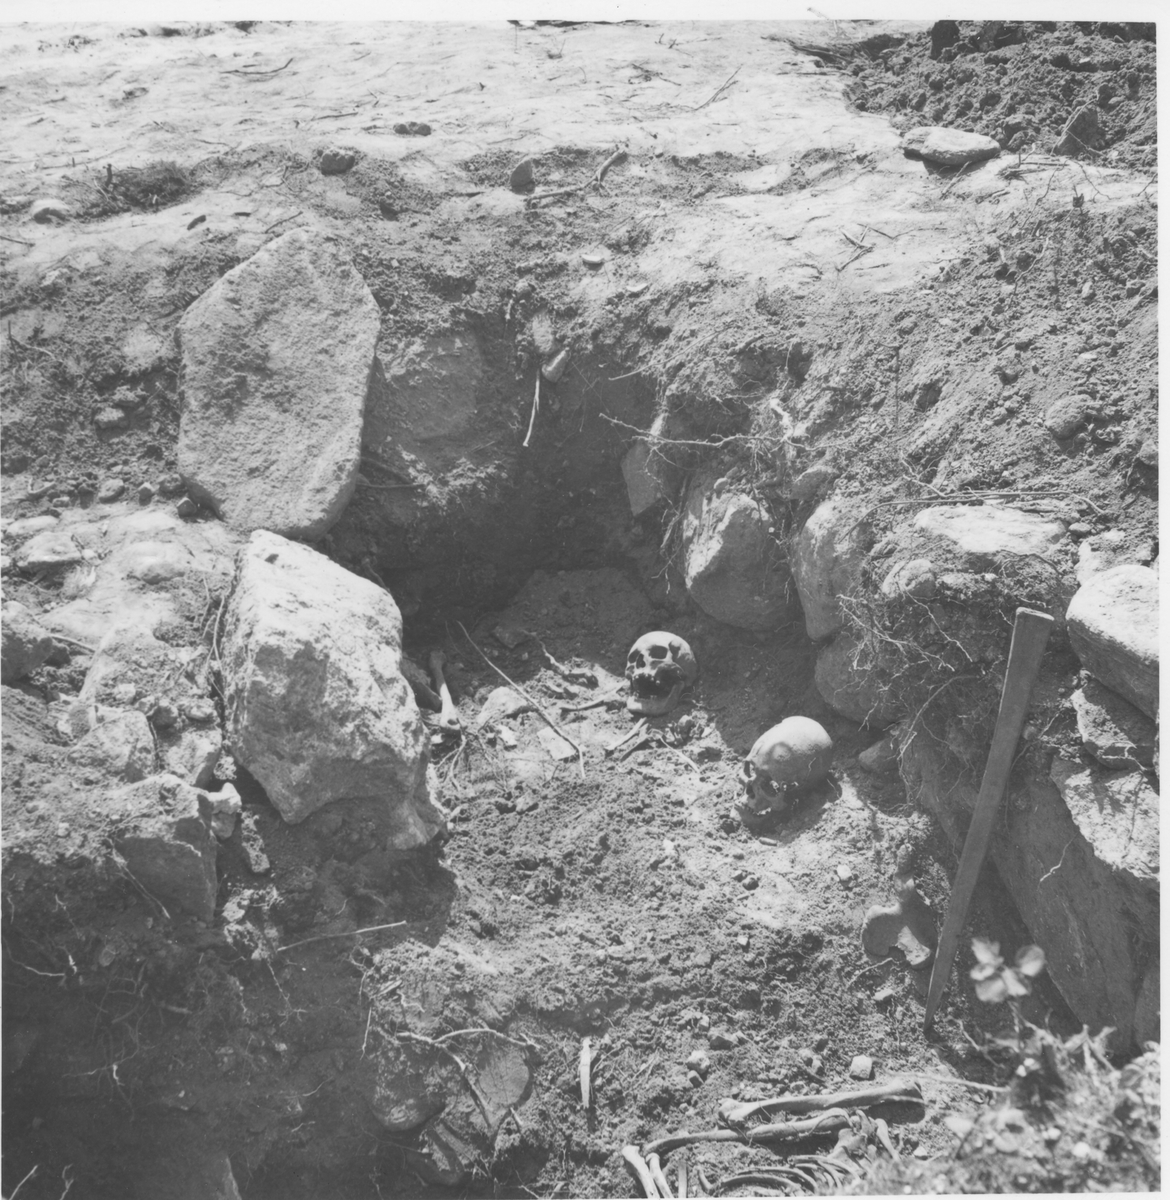 Herrljunga, Från utgrävningarna av korgrav vid Herrljunga äldsta kyrka, sommaren 1957.